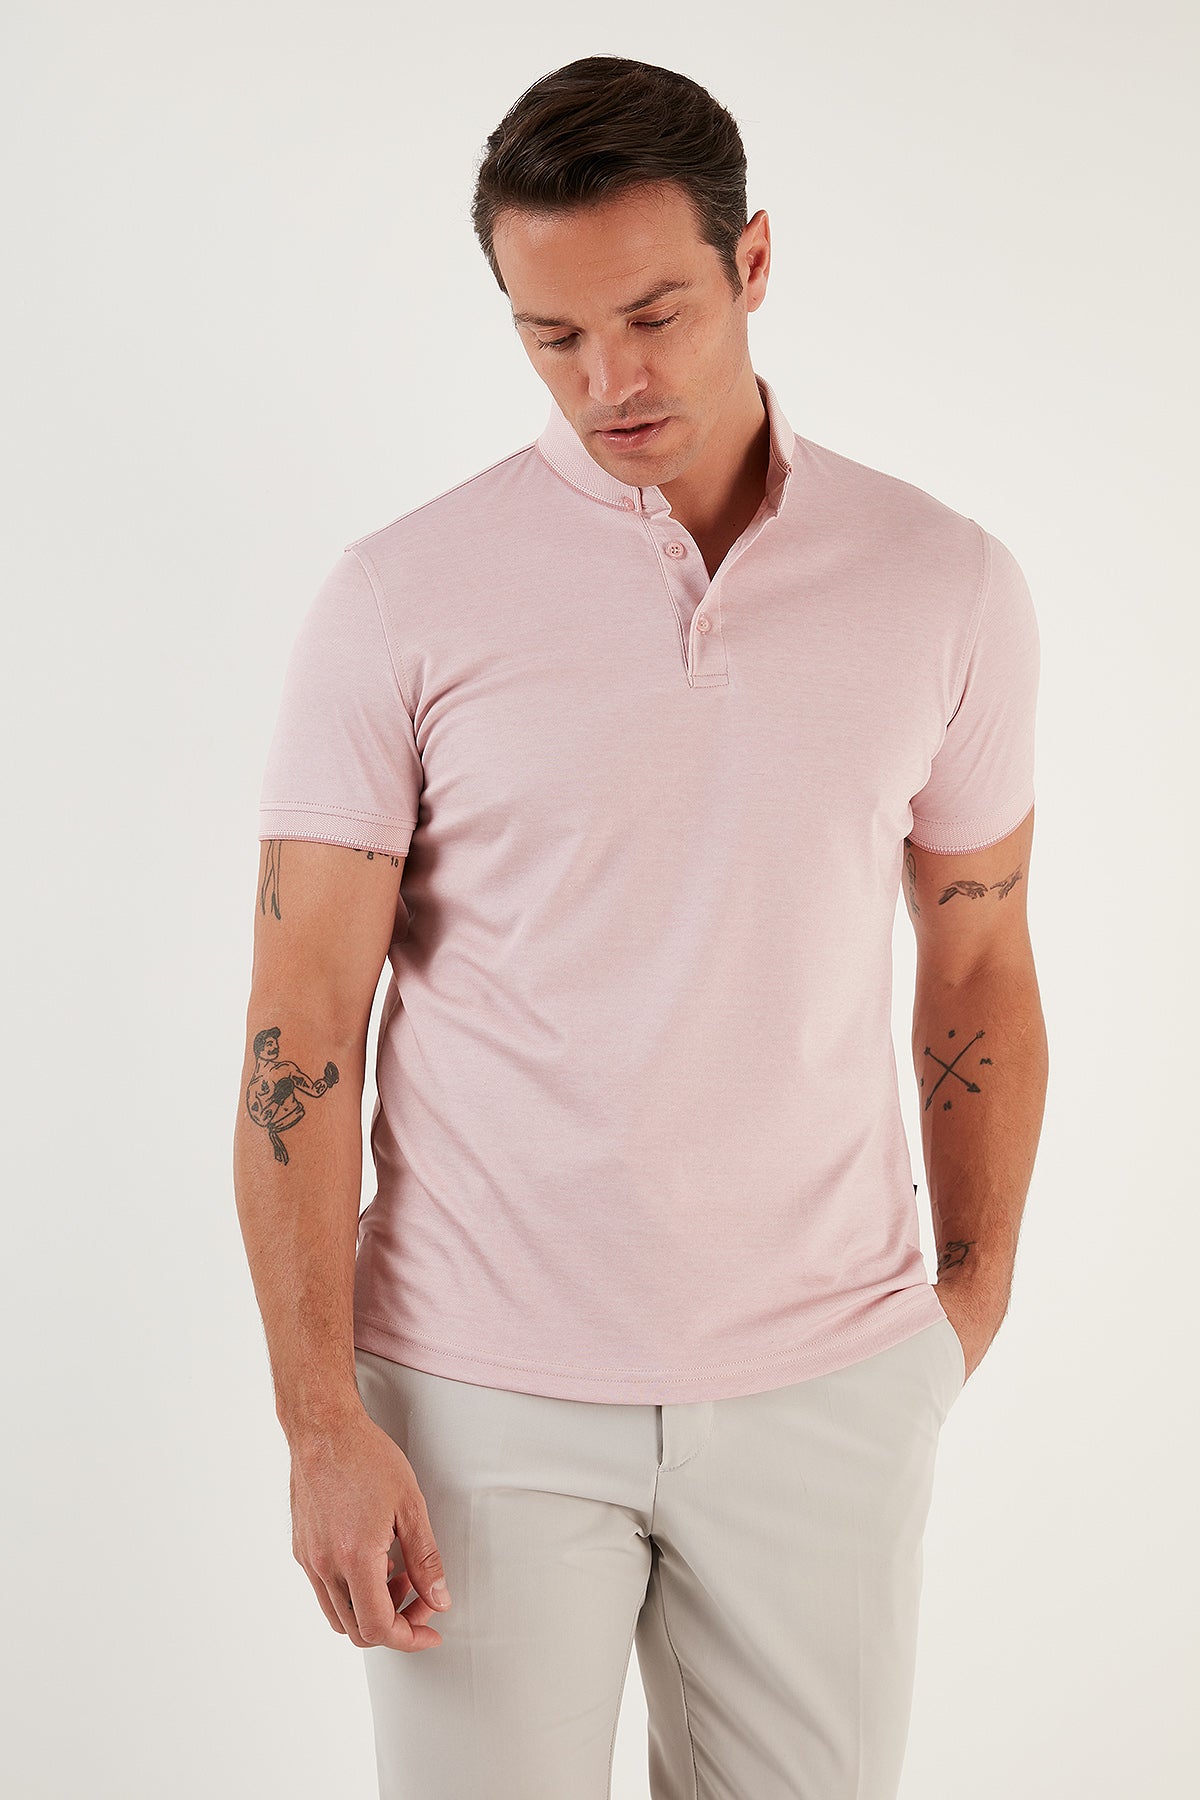 Buratti Pamuklu Slim Fit Erkek Polo T Shirt 646R1000 Beyaz-Rose